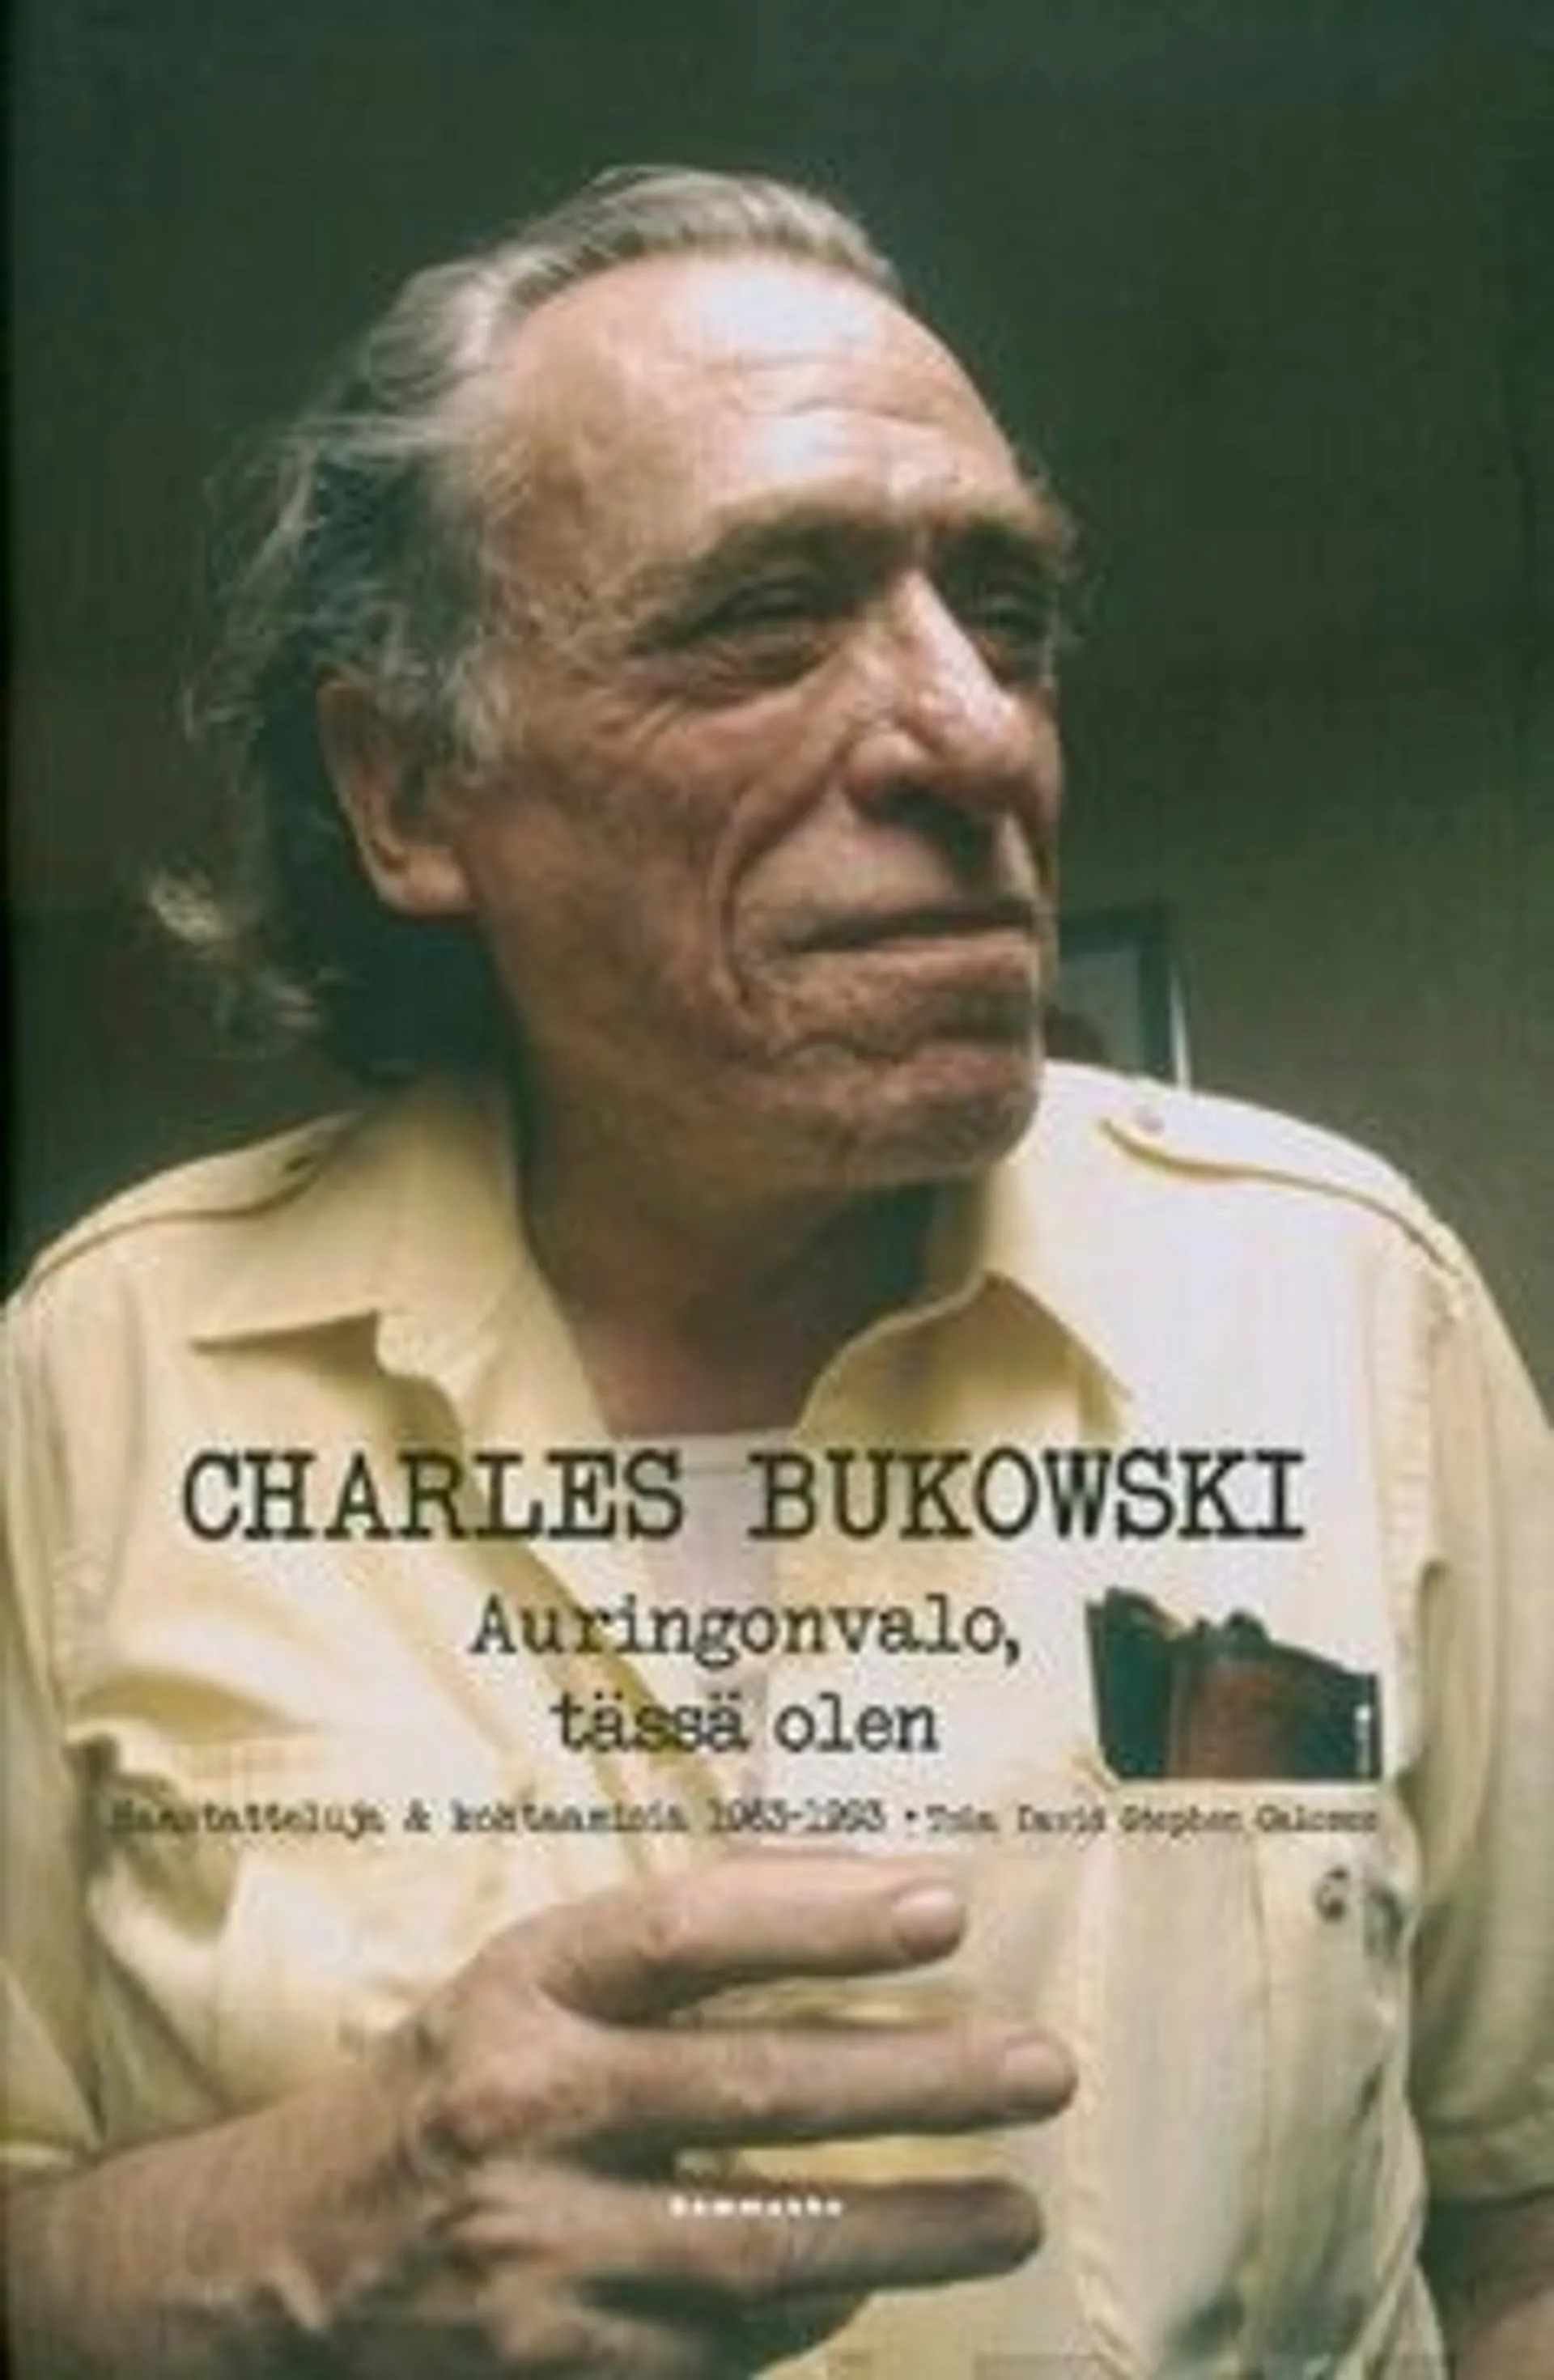 Bukowski, Auringonvalo, tässä olen - haastatteluja & kohtaamisia 1963-1993